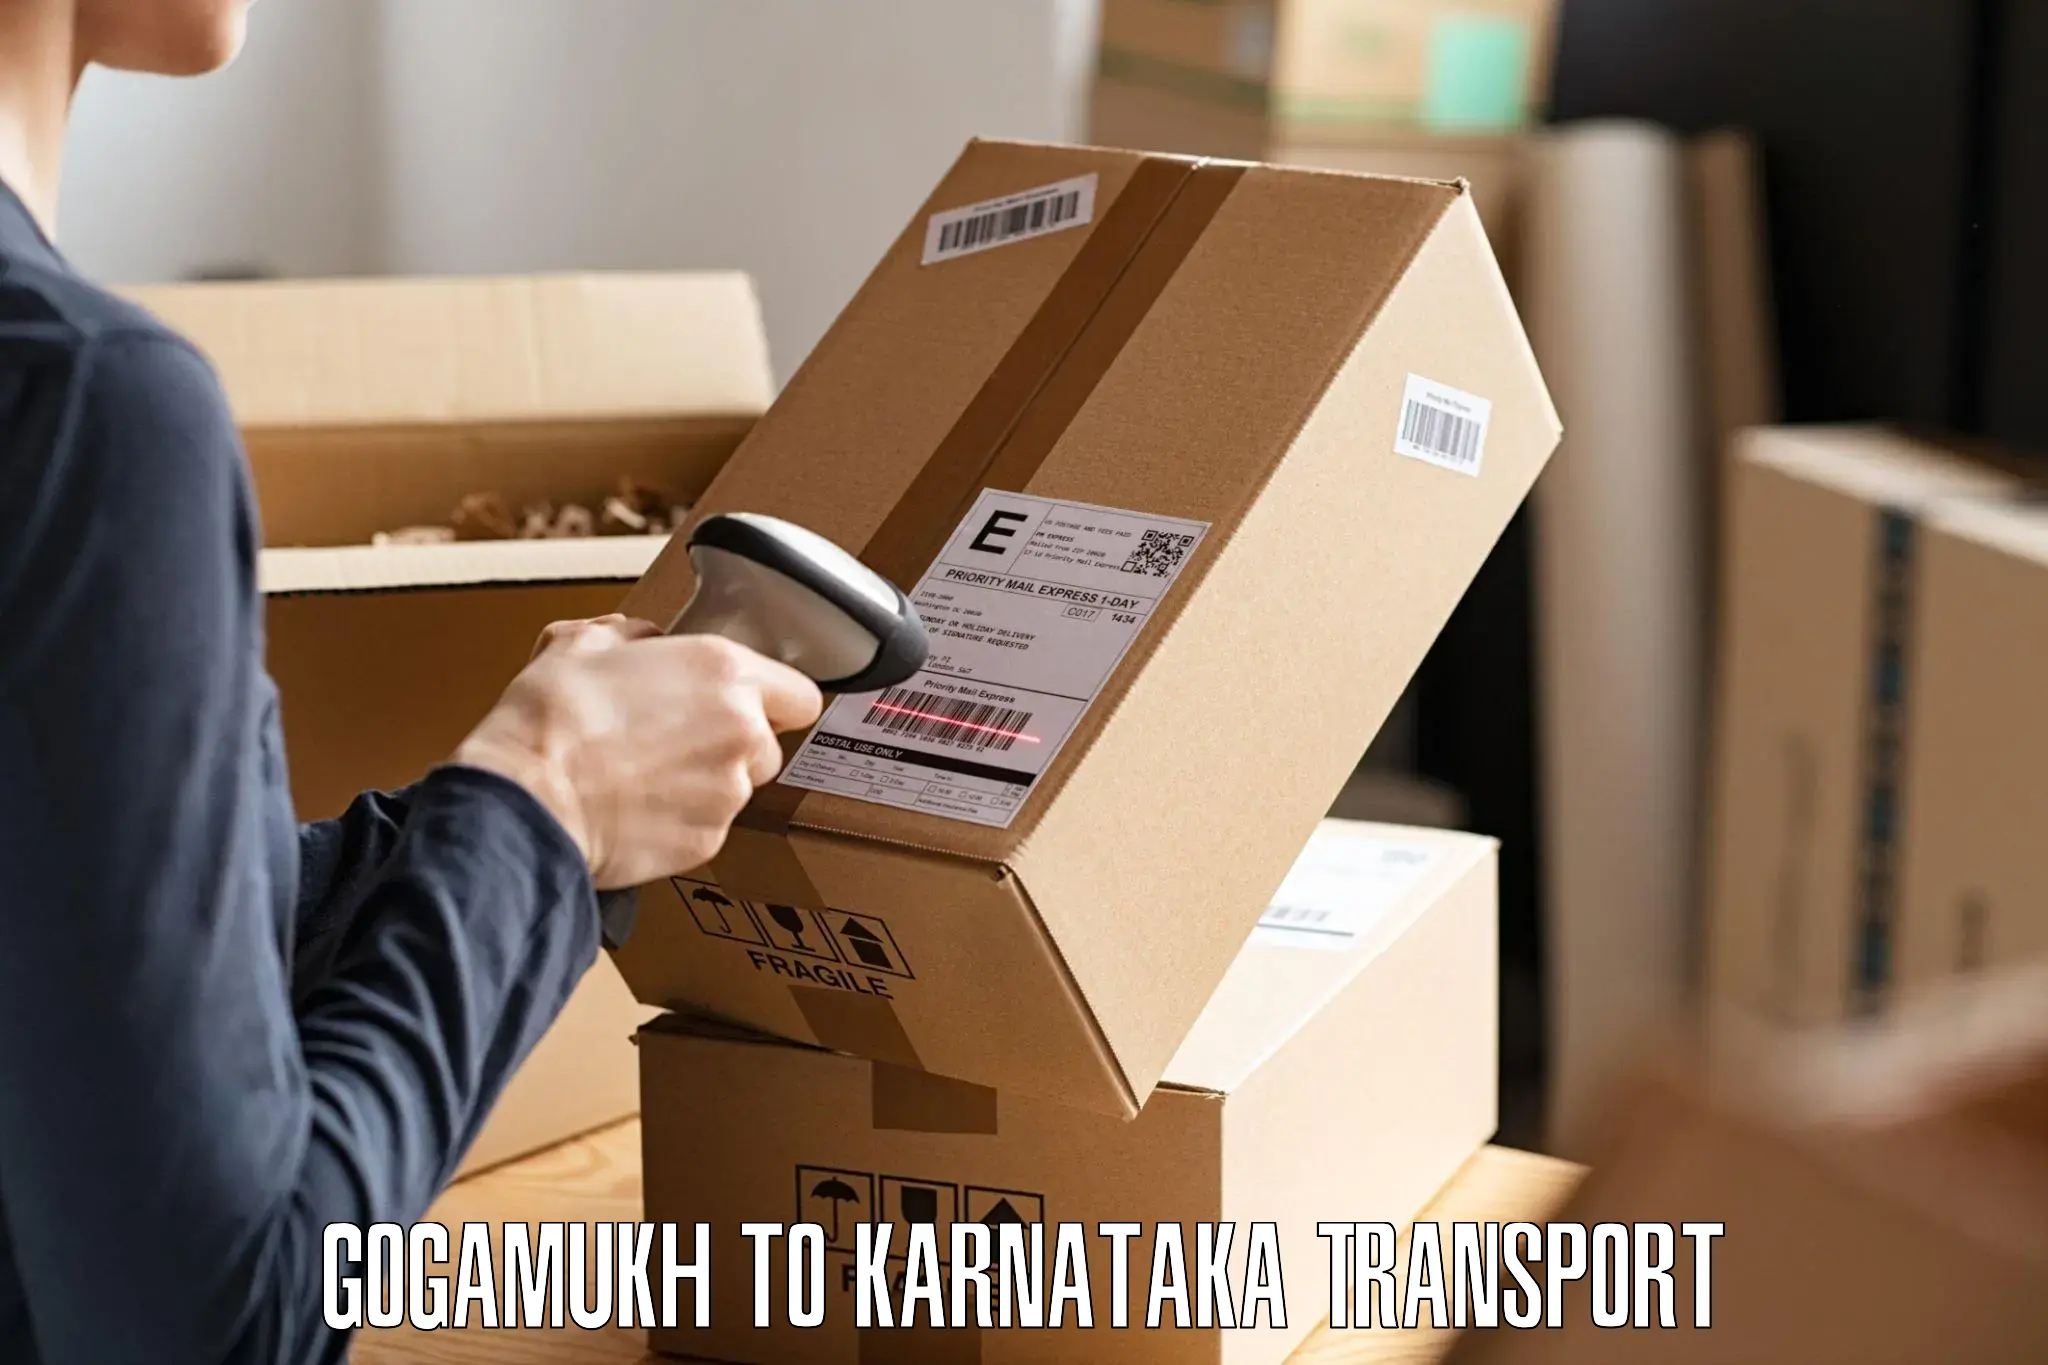 Shipping services Gogamukh to Kalaburagi